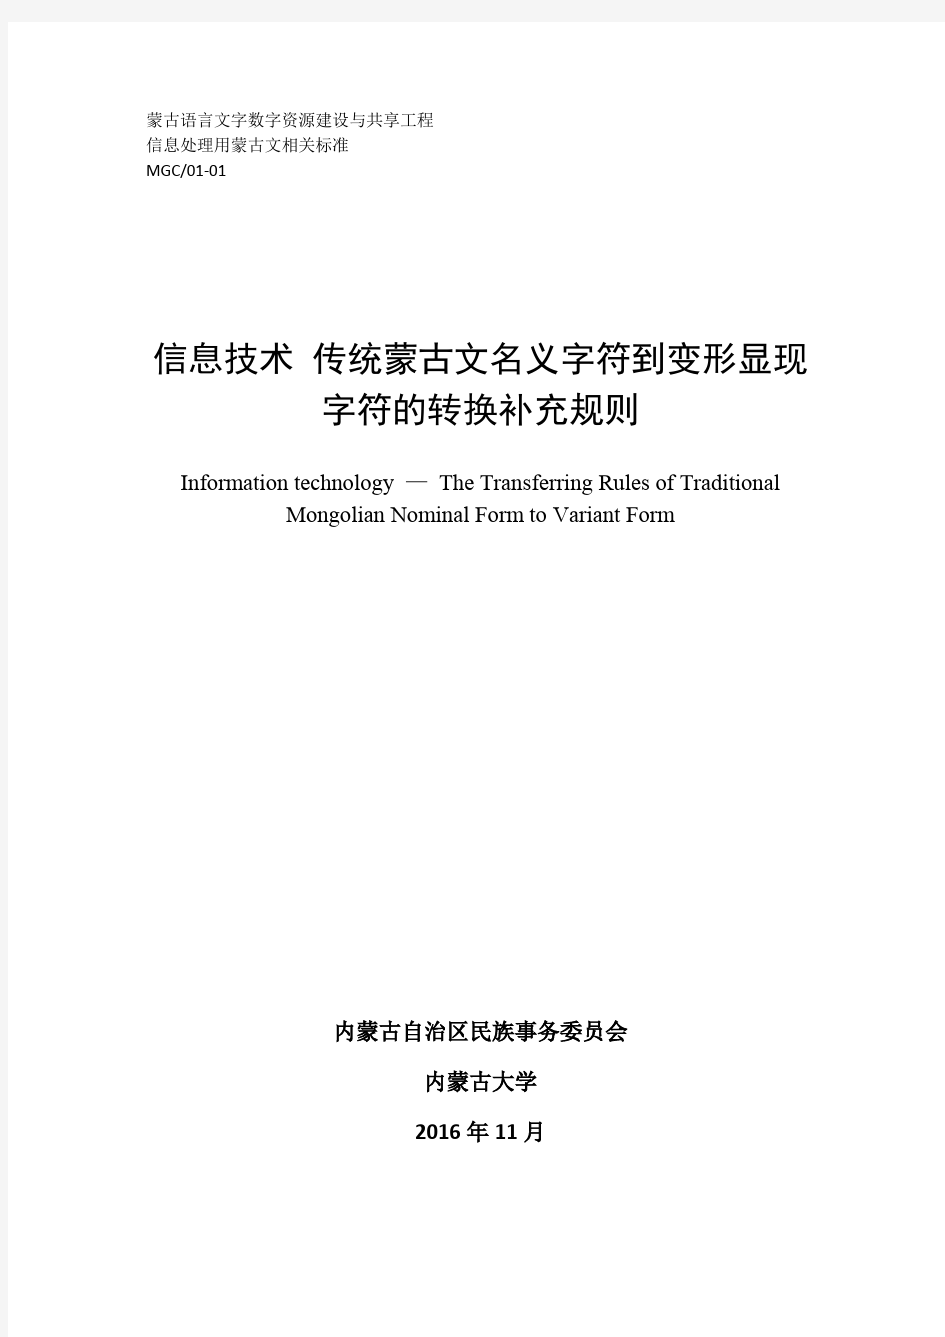 MGC01-01-传统蒙古文名义字符到变形显现字符转换规则(中文)